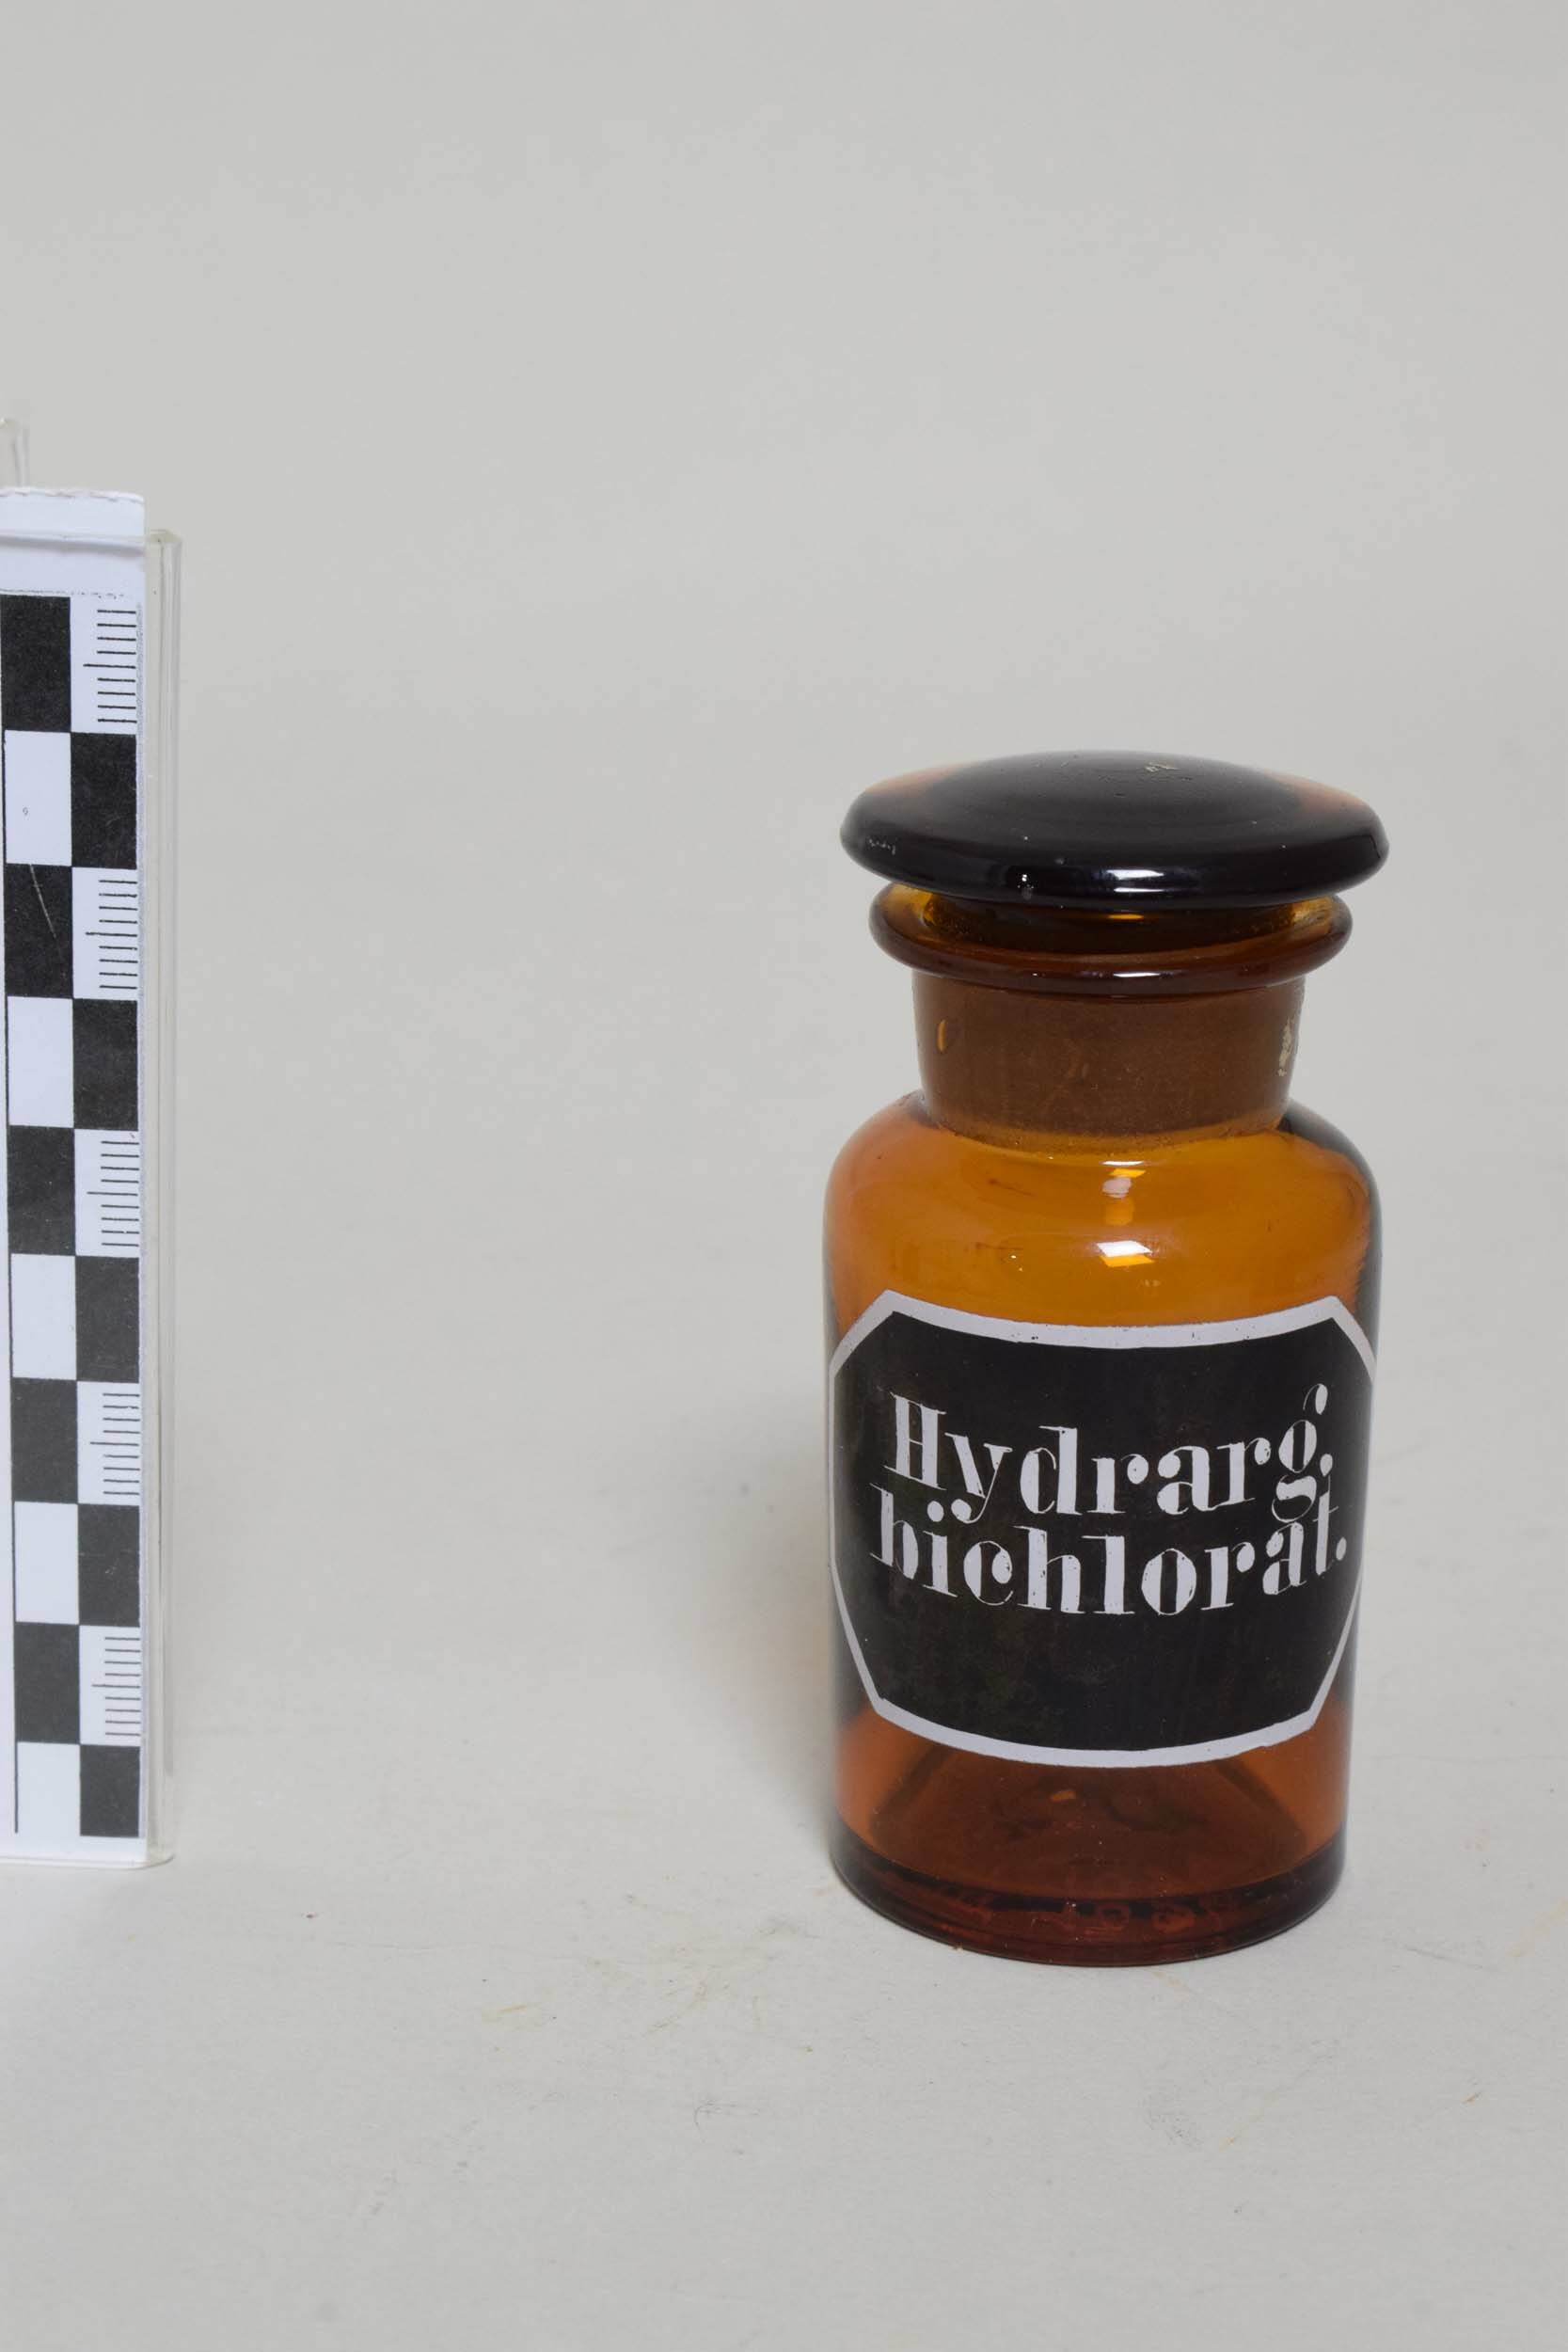 Apothekenflasche "Hydrarg. bichlorat" (Quecksilberchlorid) (Heimatmuseum Dohna CC BY-NC-SA)